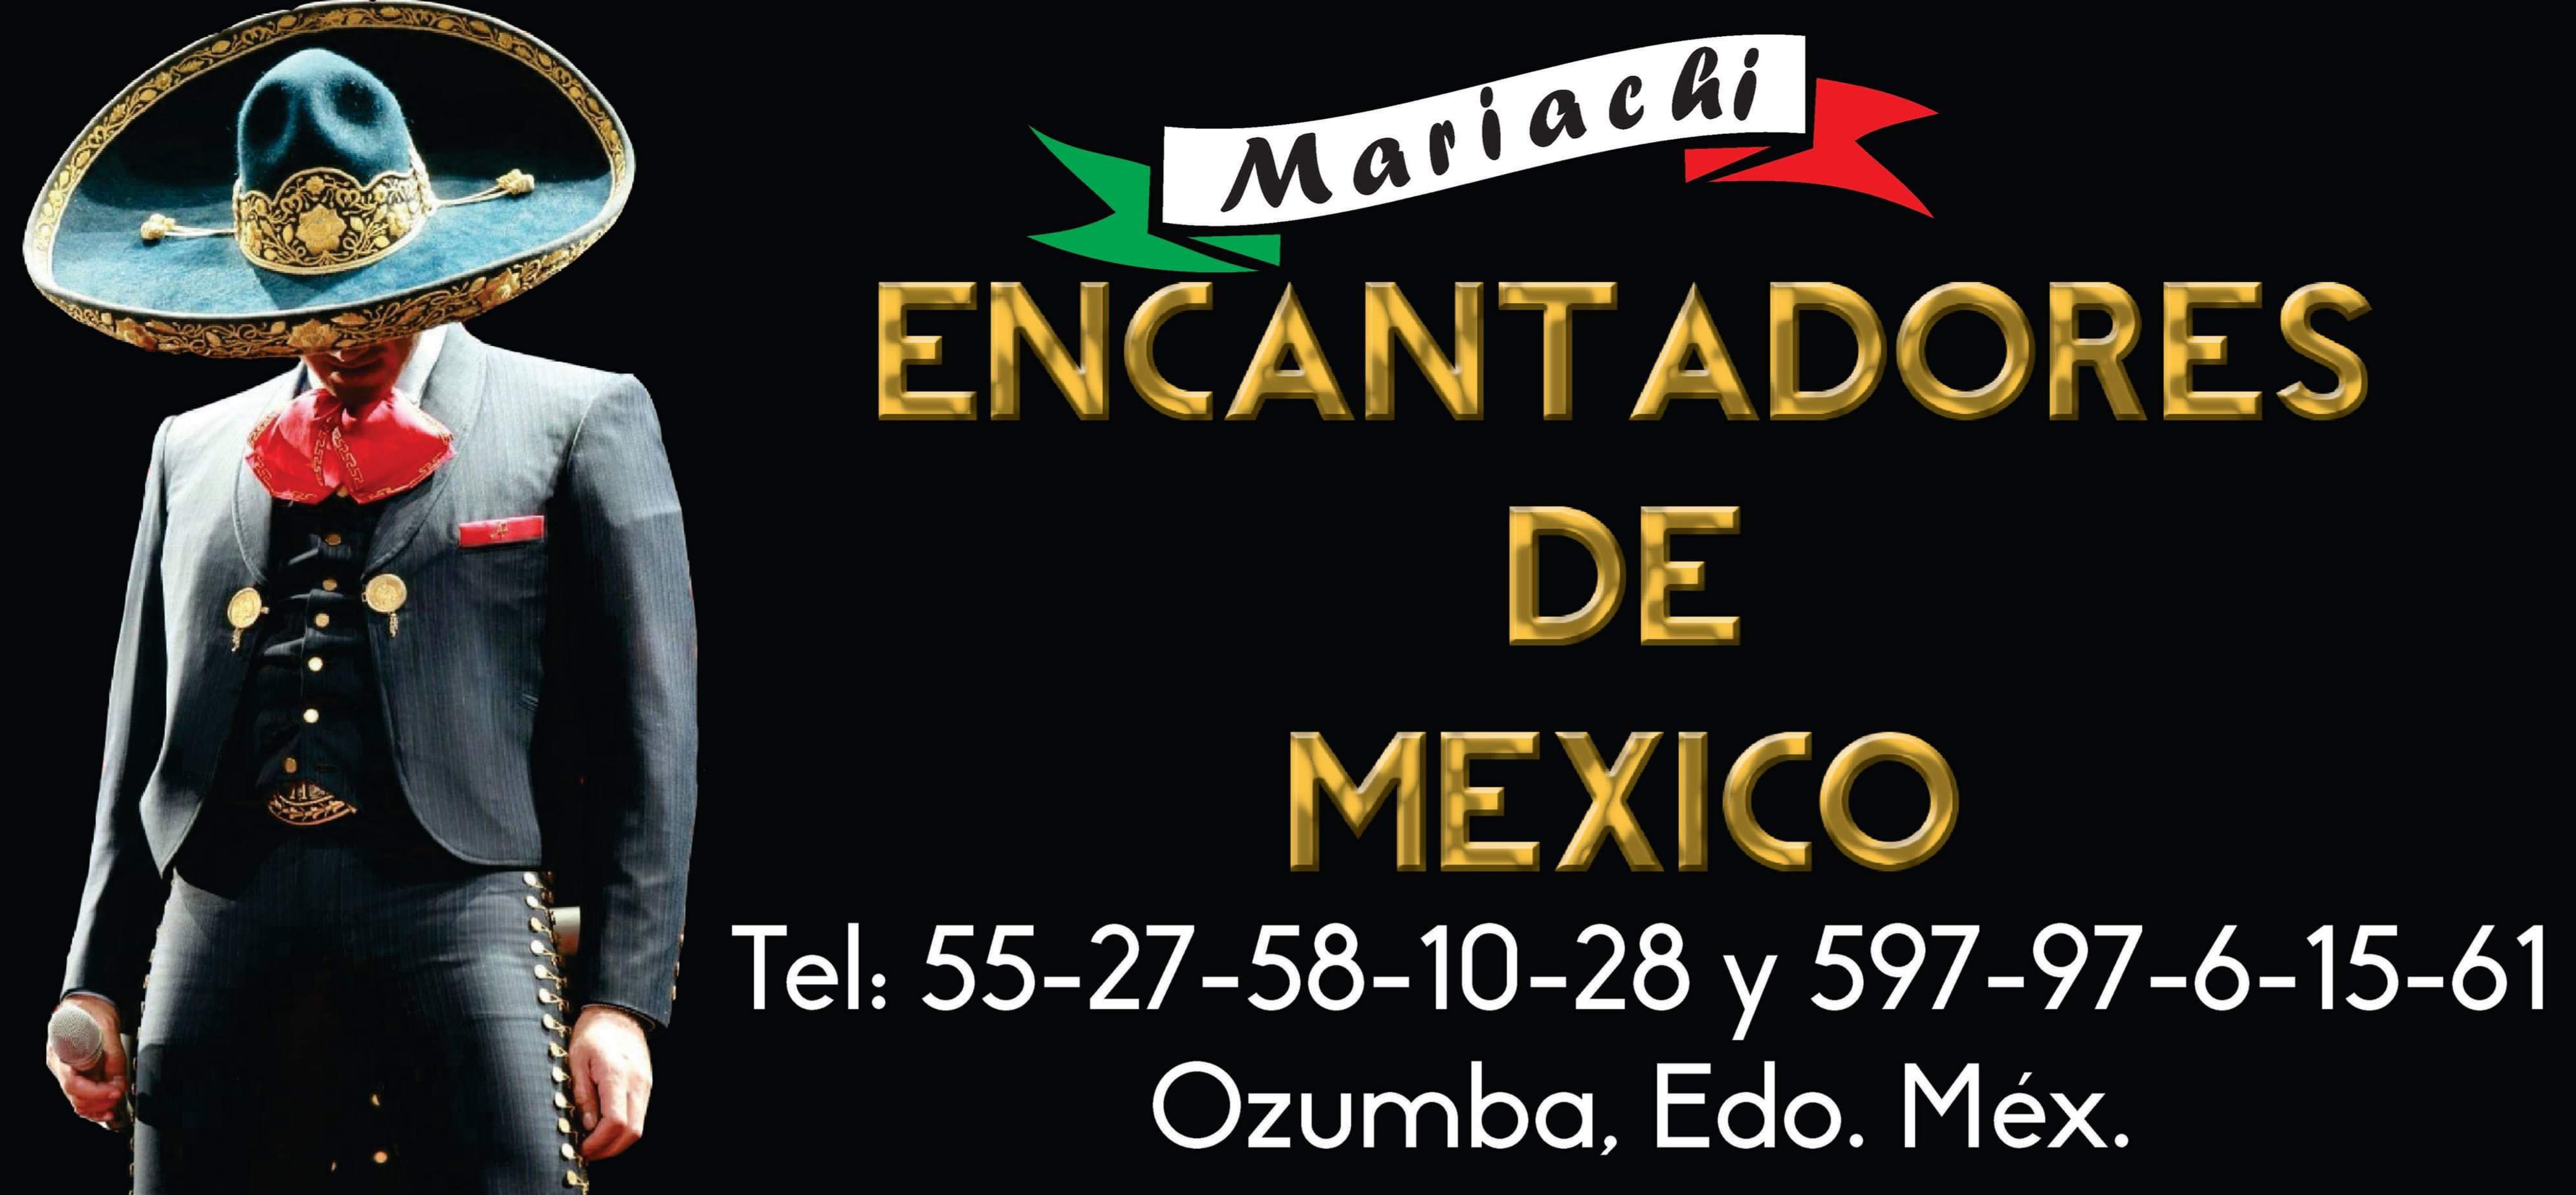 Mariachi Encantadores de México